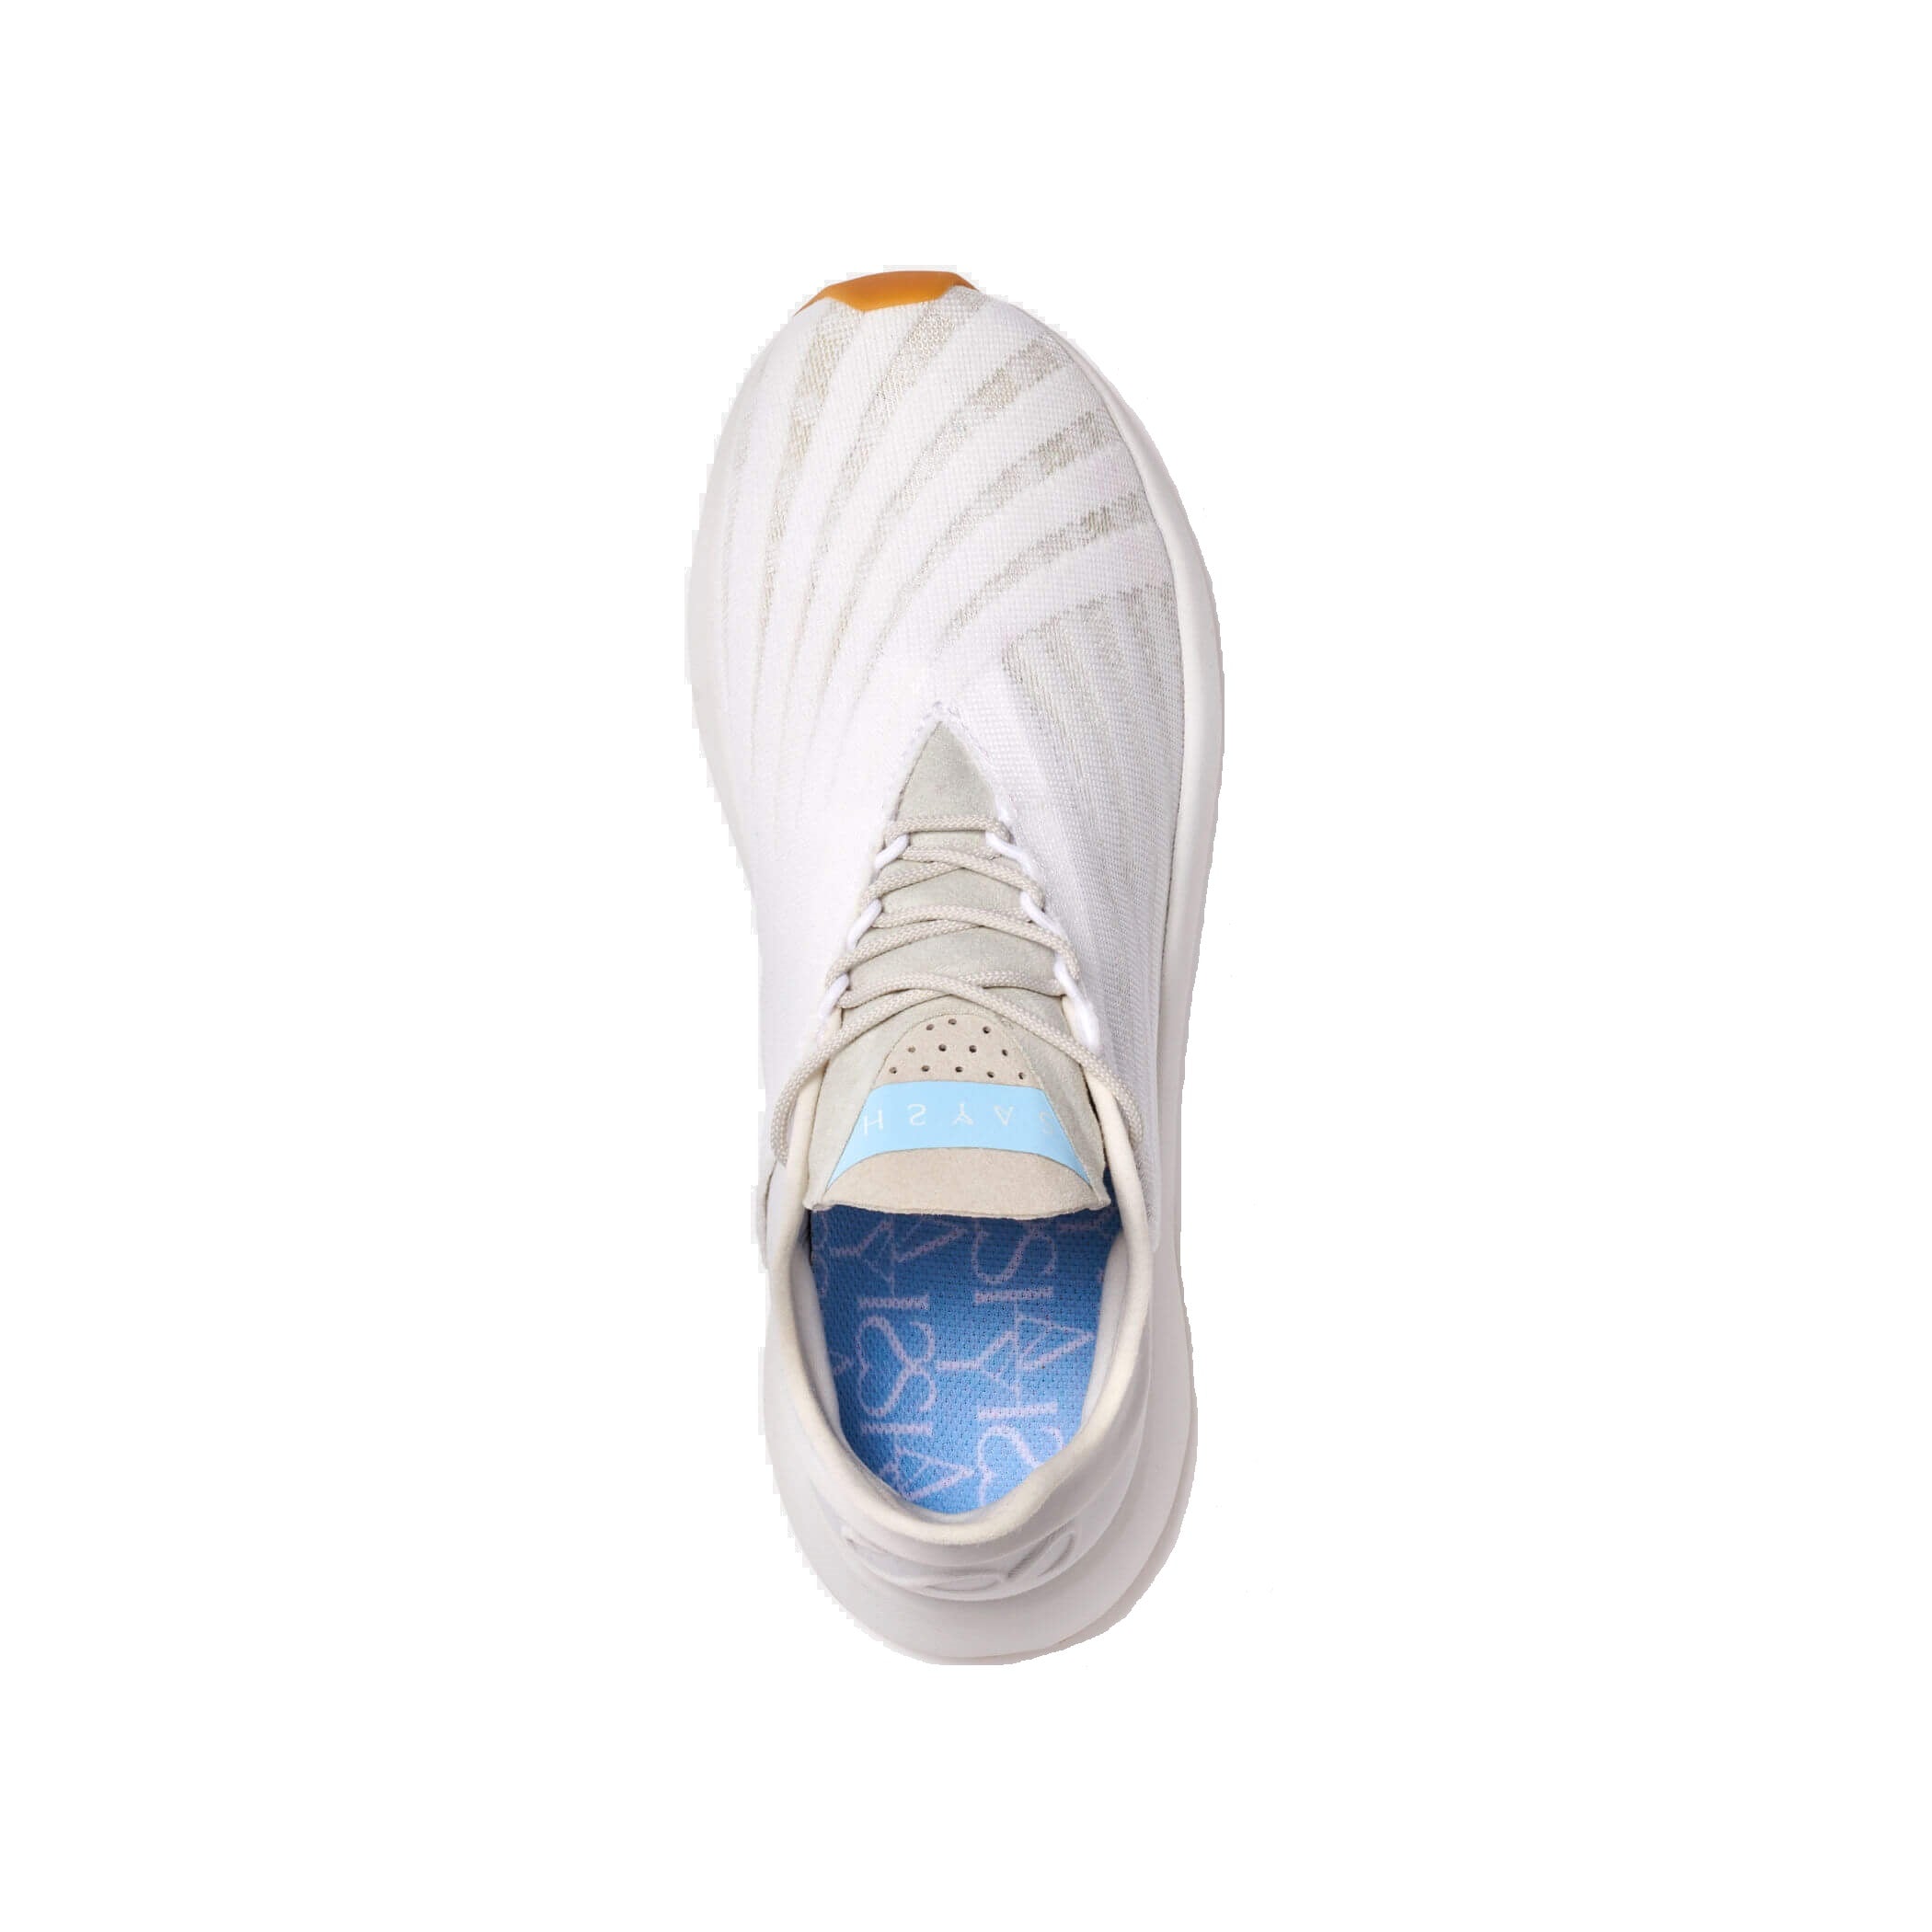 Allyson Felix shoe company | Color: White